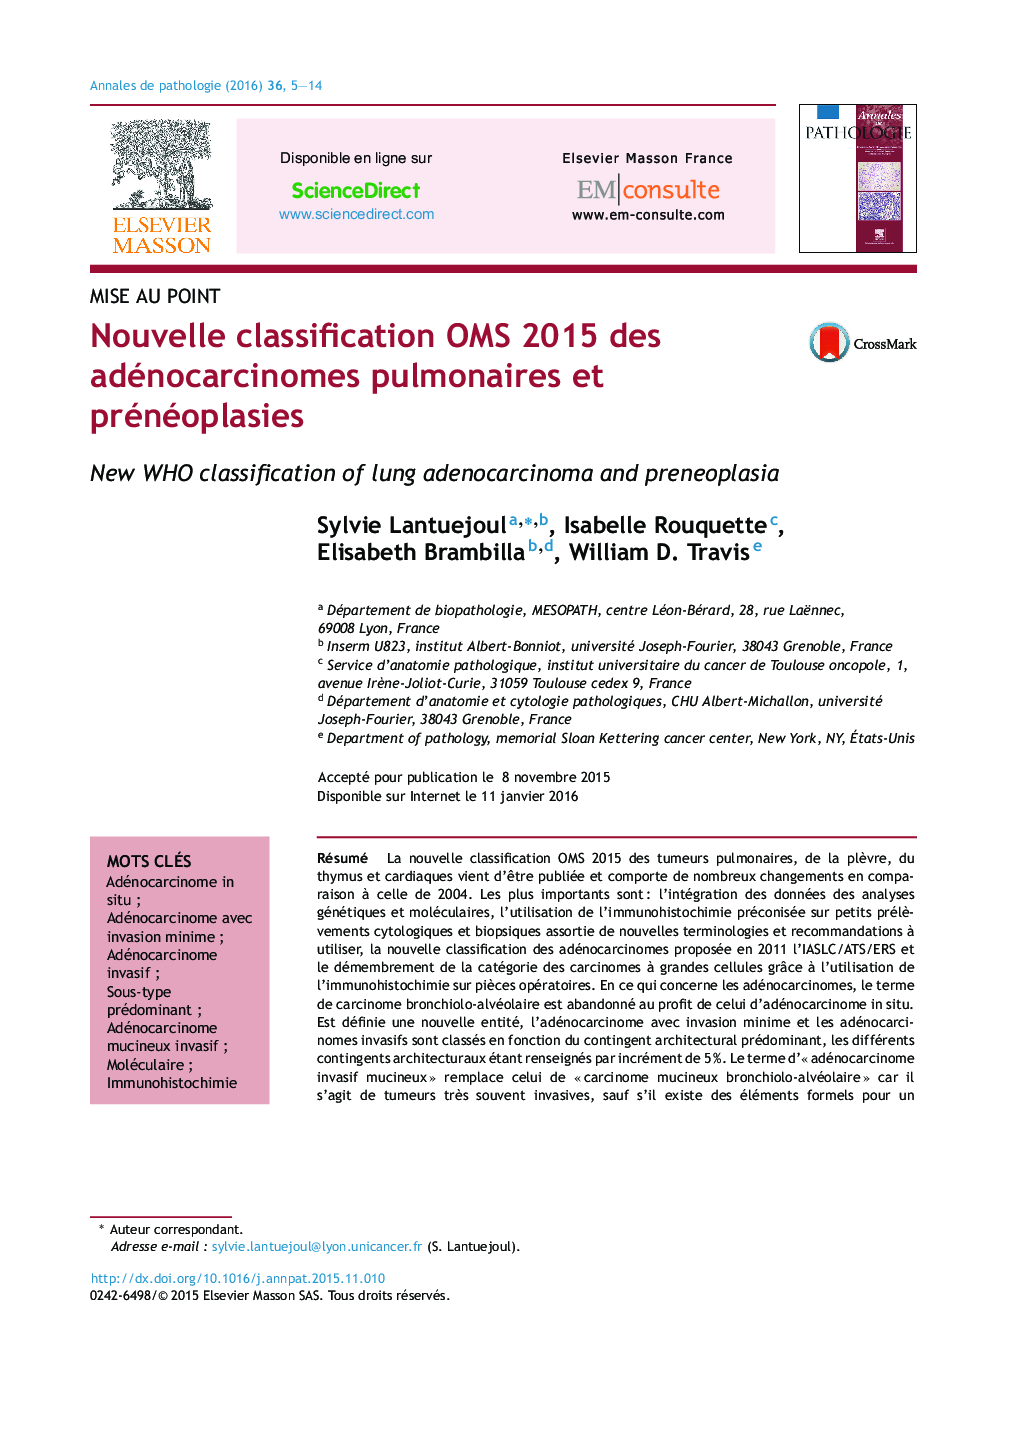 Nouvelle classification OMS 2015 des adénocarcinomes pulmonaires et prénéoplasies